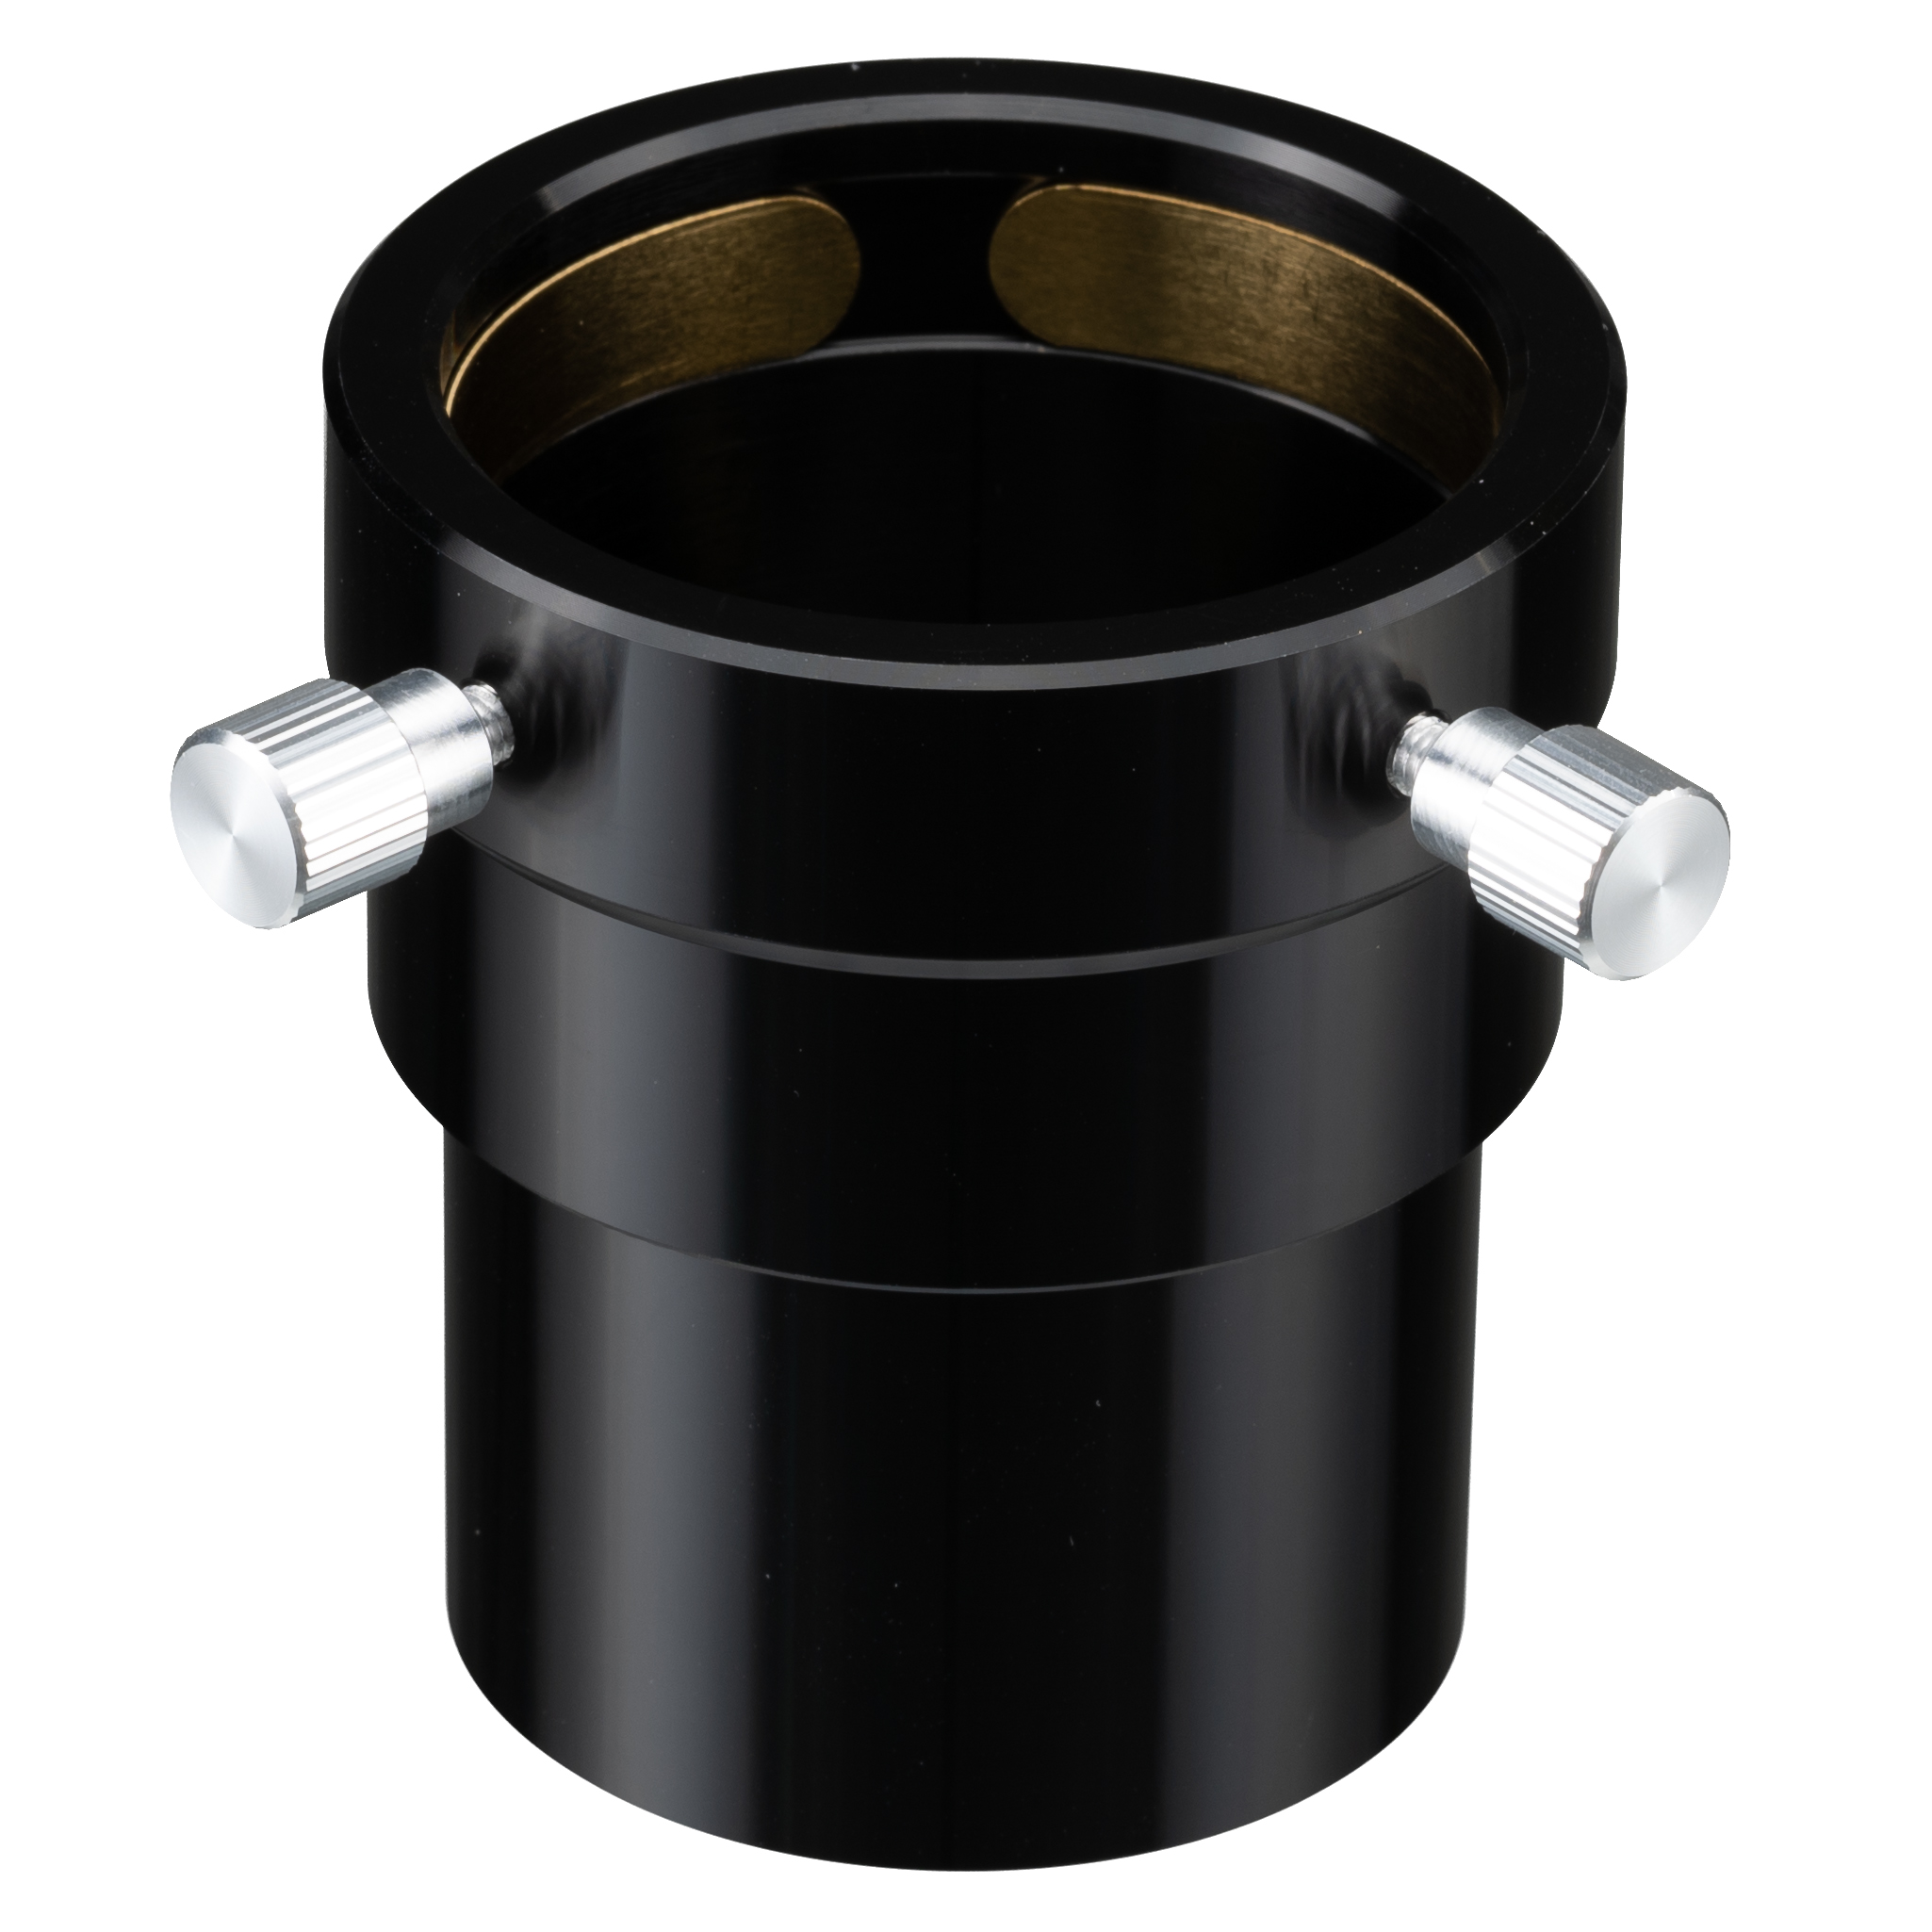 BRESSER cilindro prolongador 2"/35mm